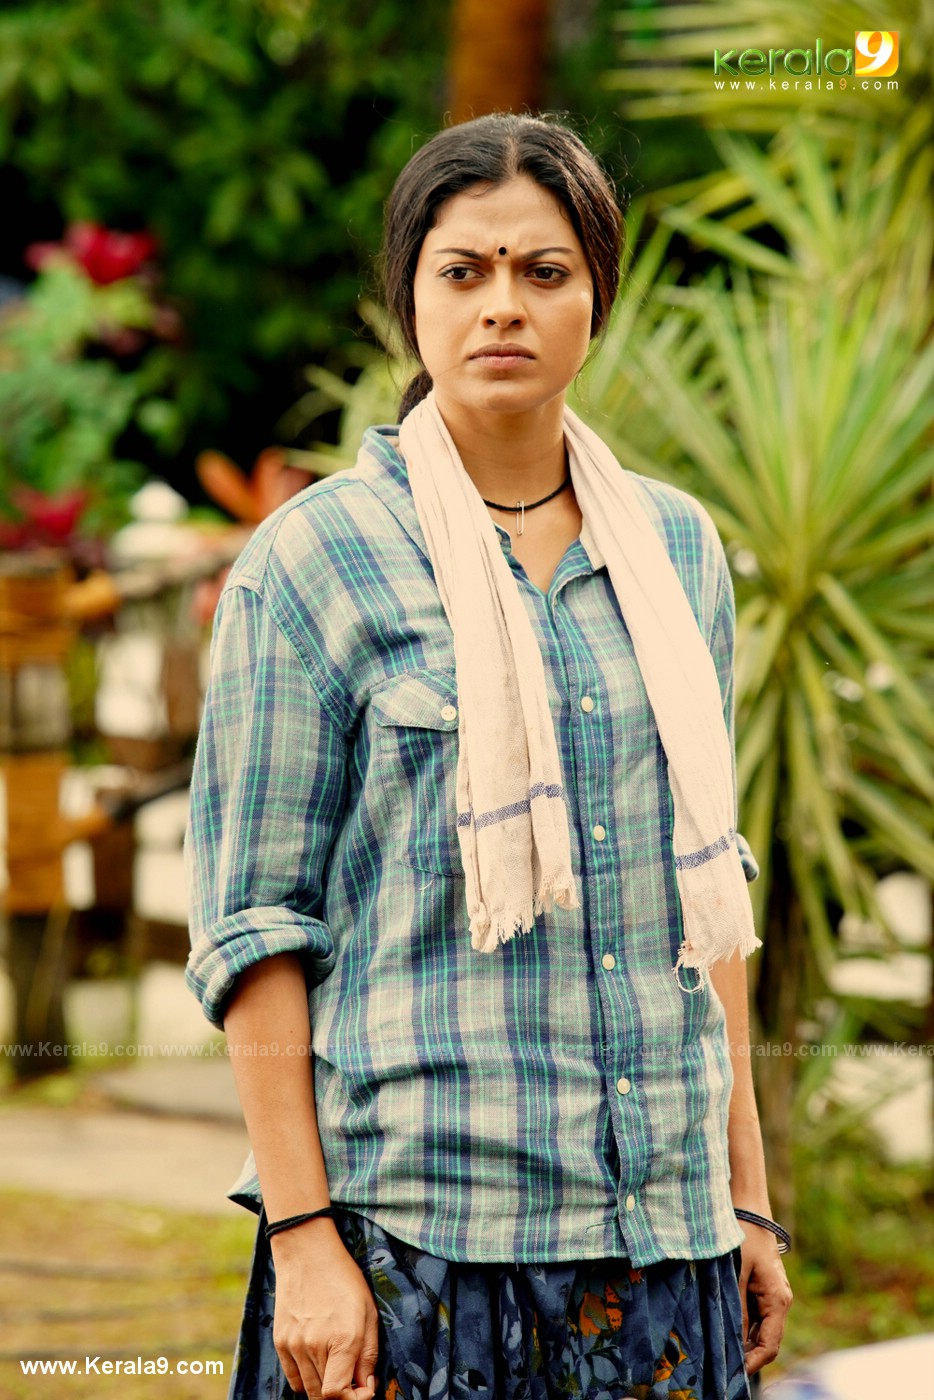 Anusree in madura raja movie stills 9 - Kerala9.com